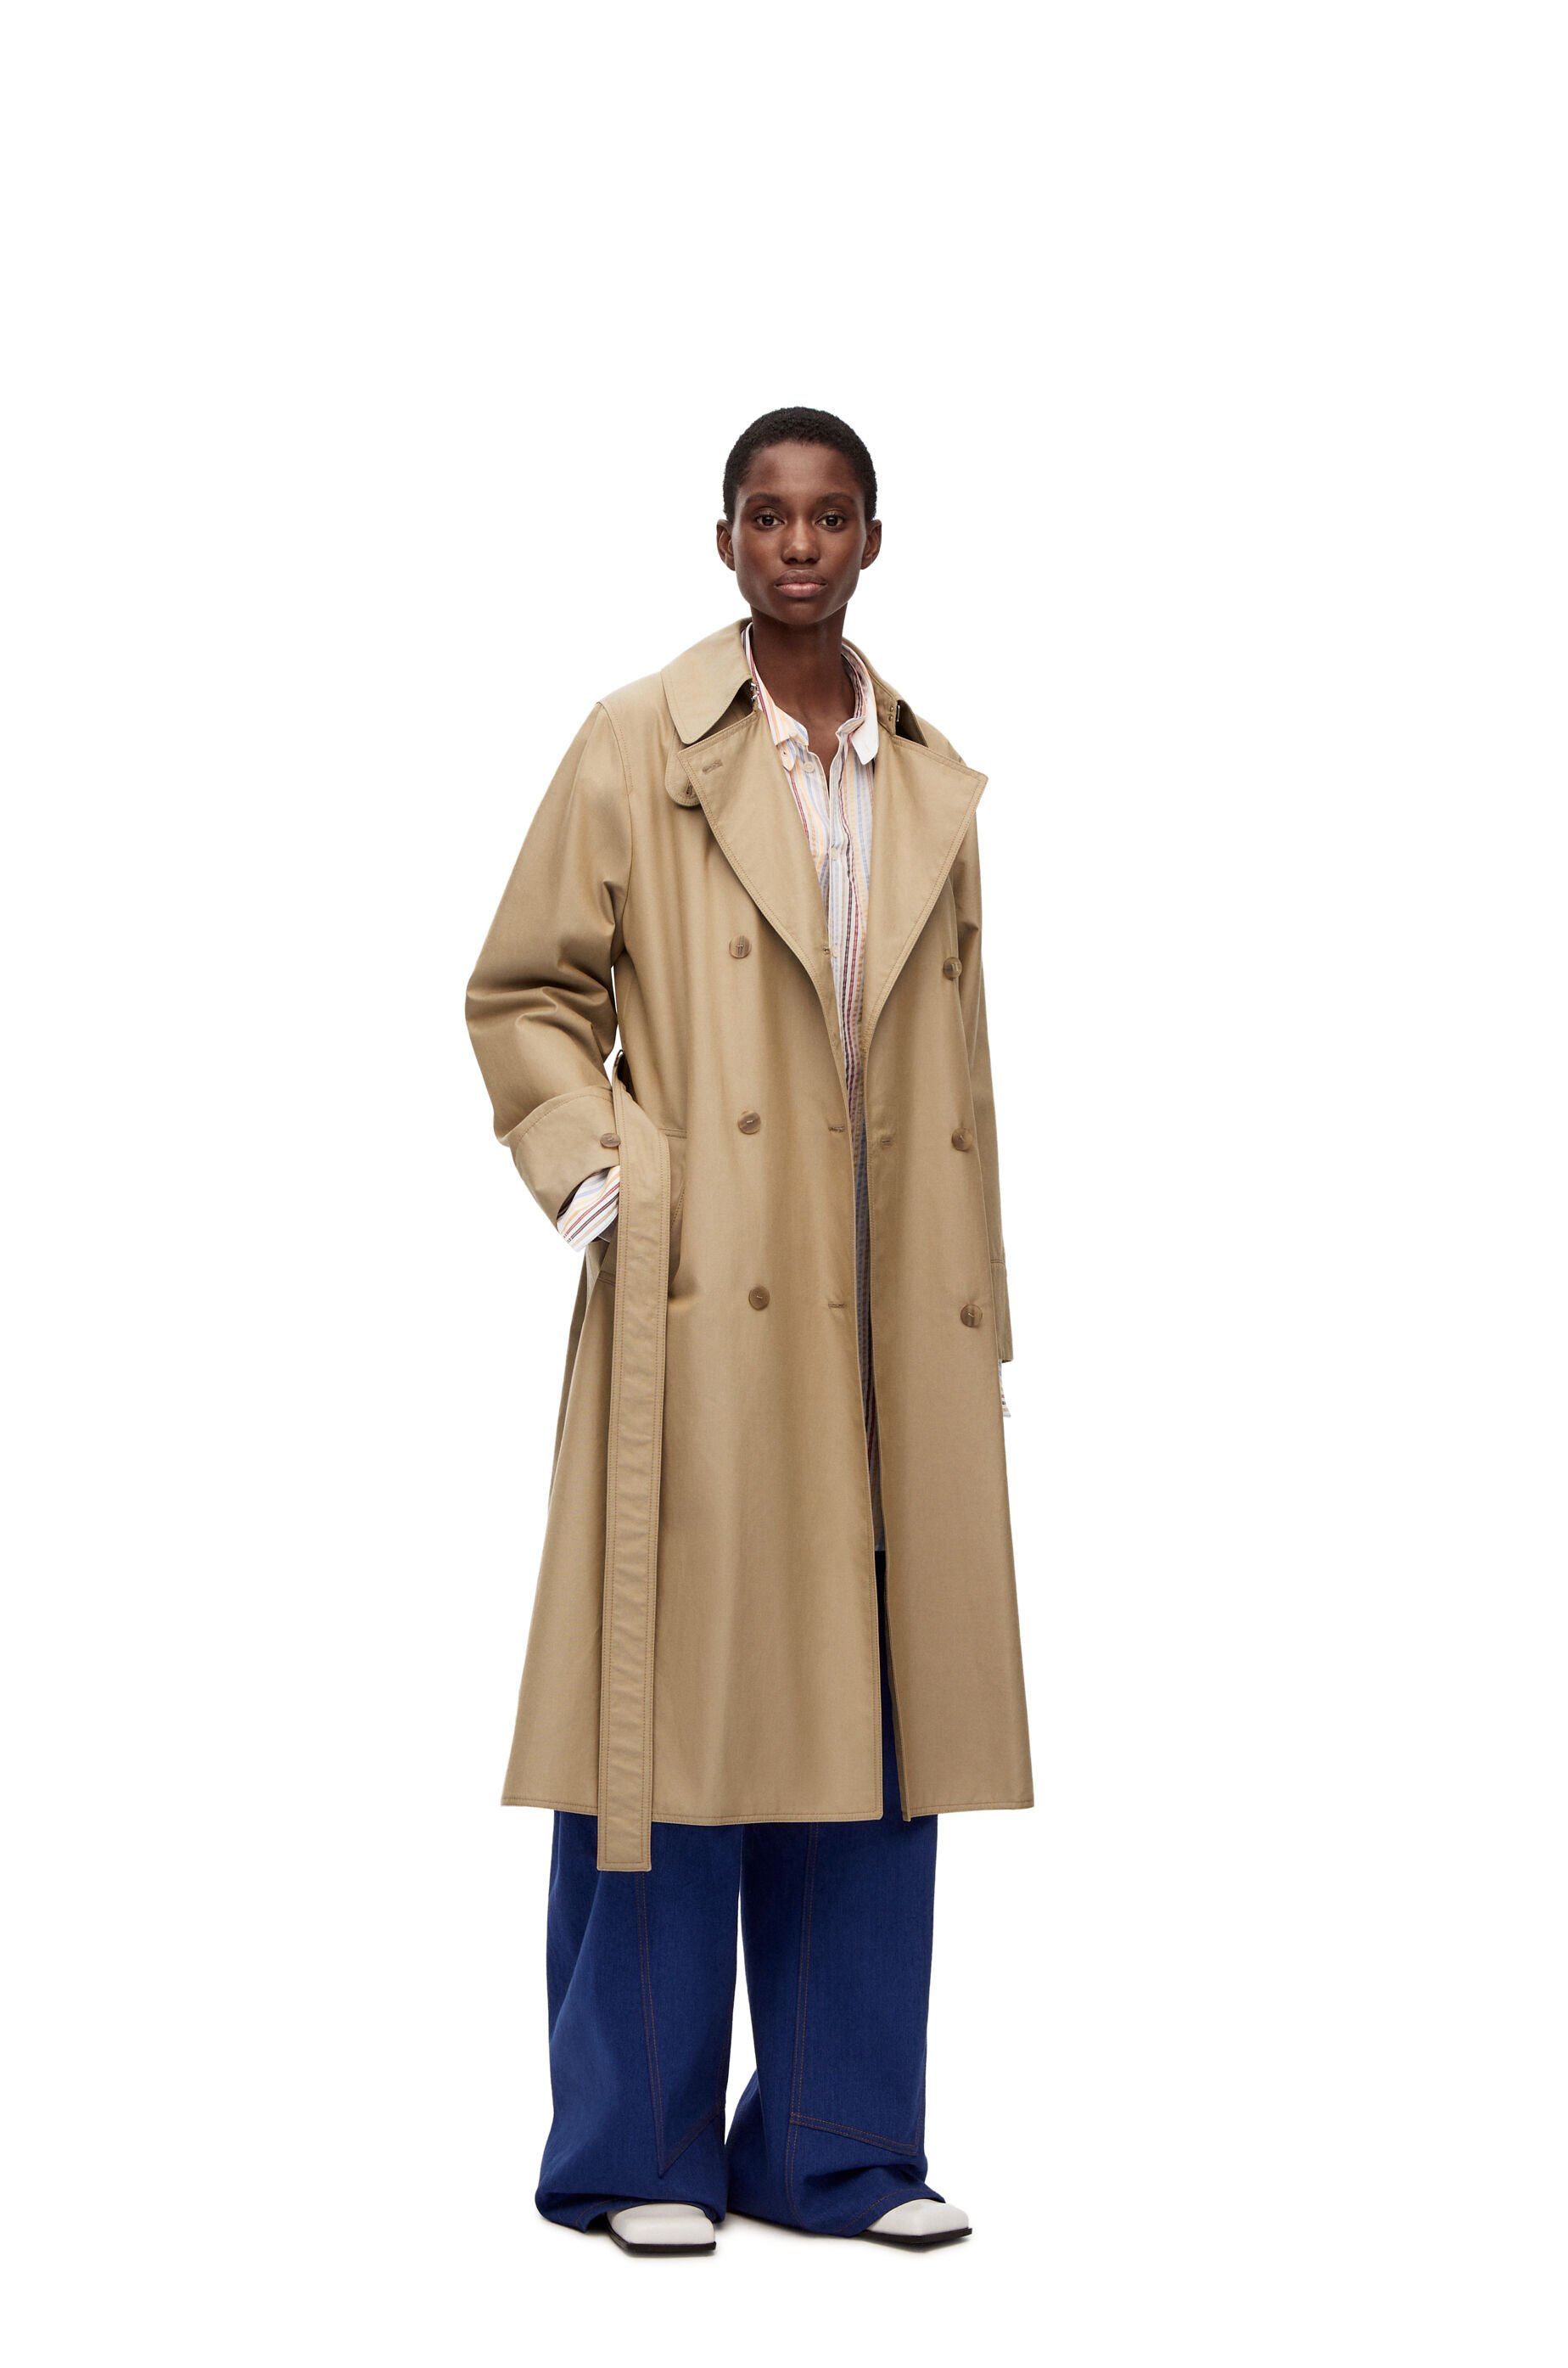 Luxury coats for women - LOEWE